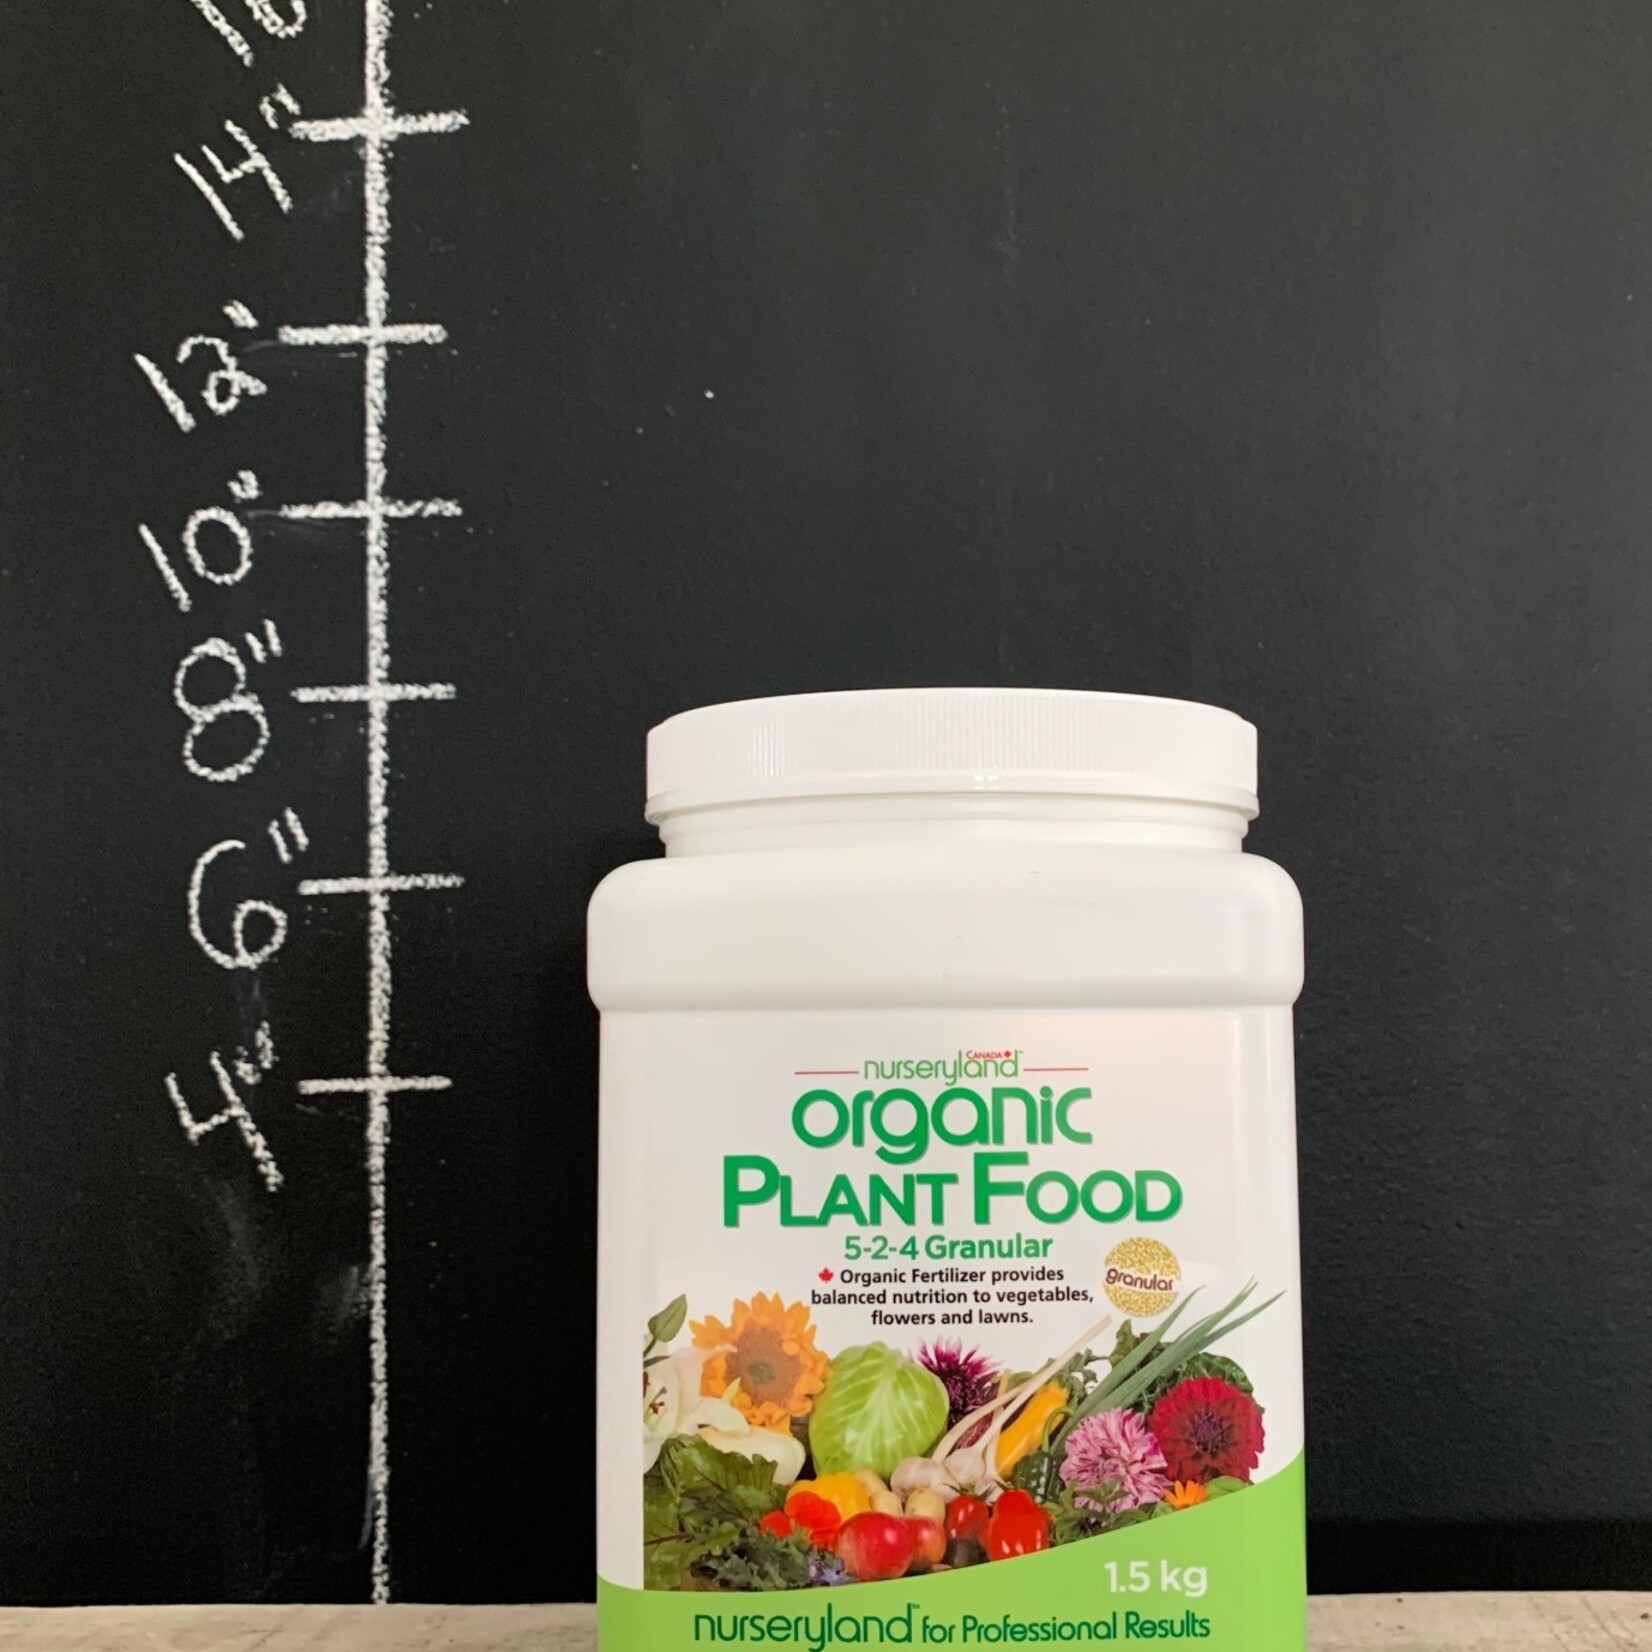 Nurseryland Organic Plant Food 5-2-4 1.5kg Granular